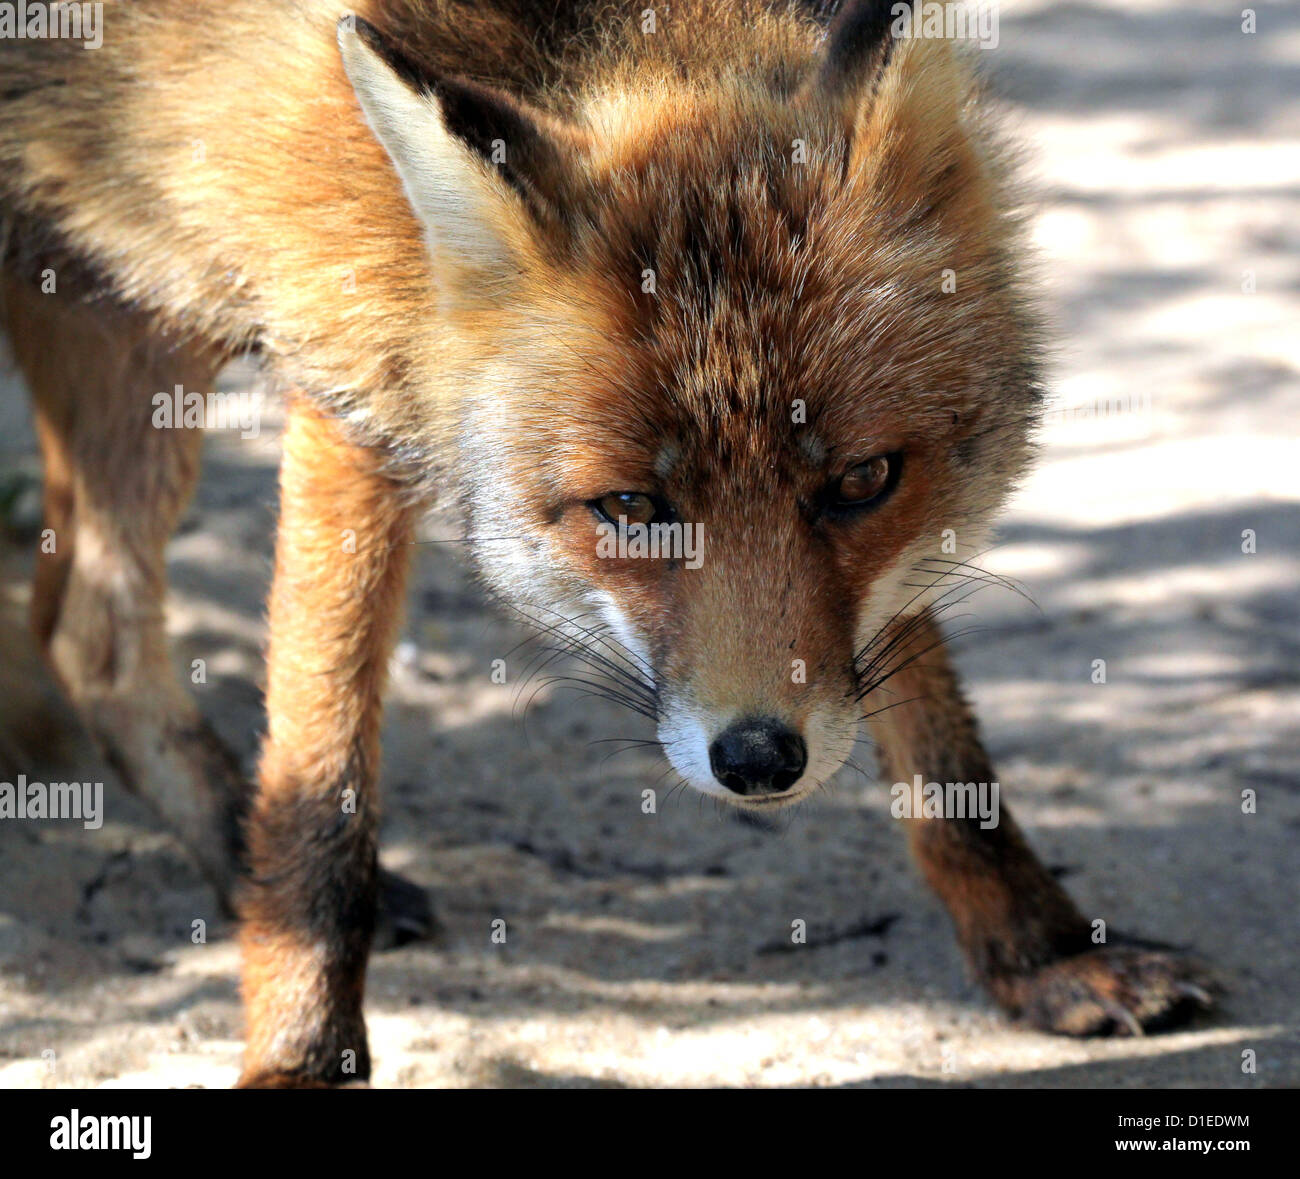 Desafiante Unión zorro rojo (Vulpes vulpes) mirando a la cámara Foto de stock